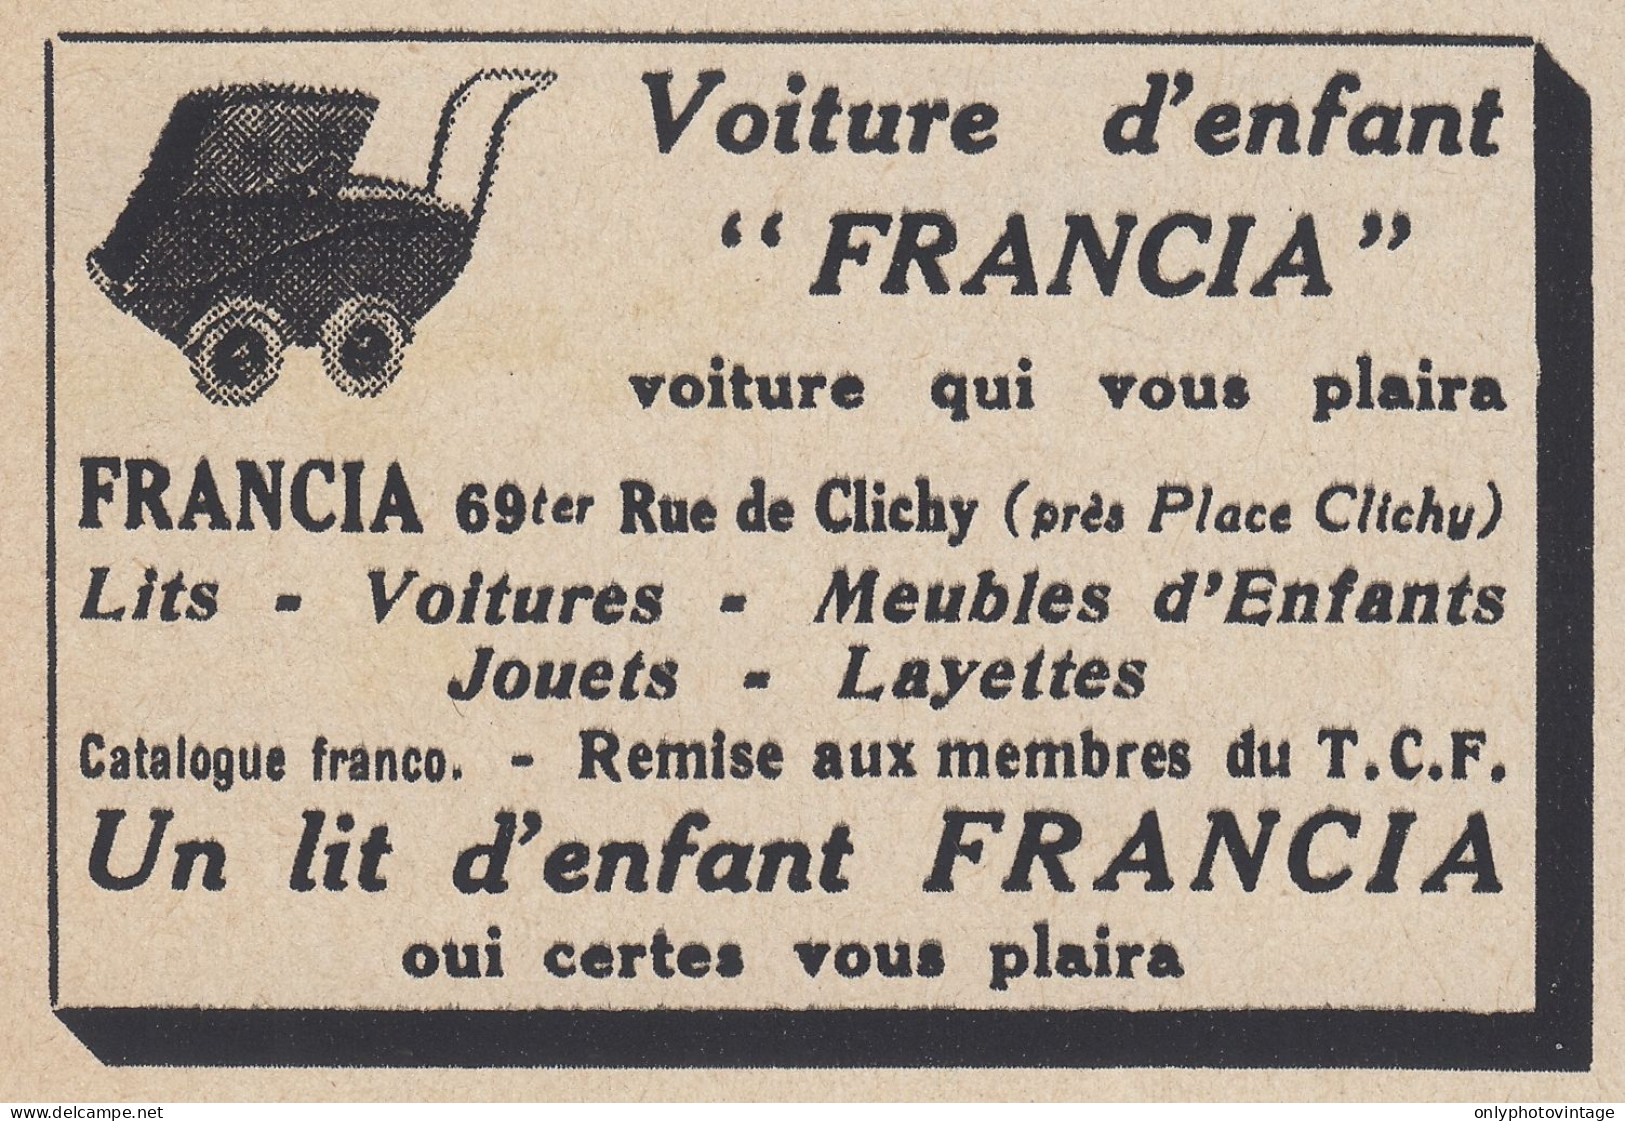 Voiture D'enfant FRANCIA - 1938 Vintage Advertising - Pubblicit� Epoca - Werbung